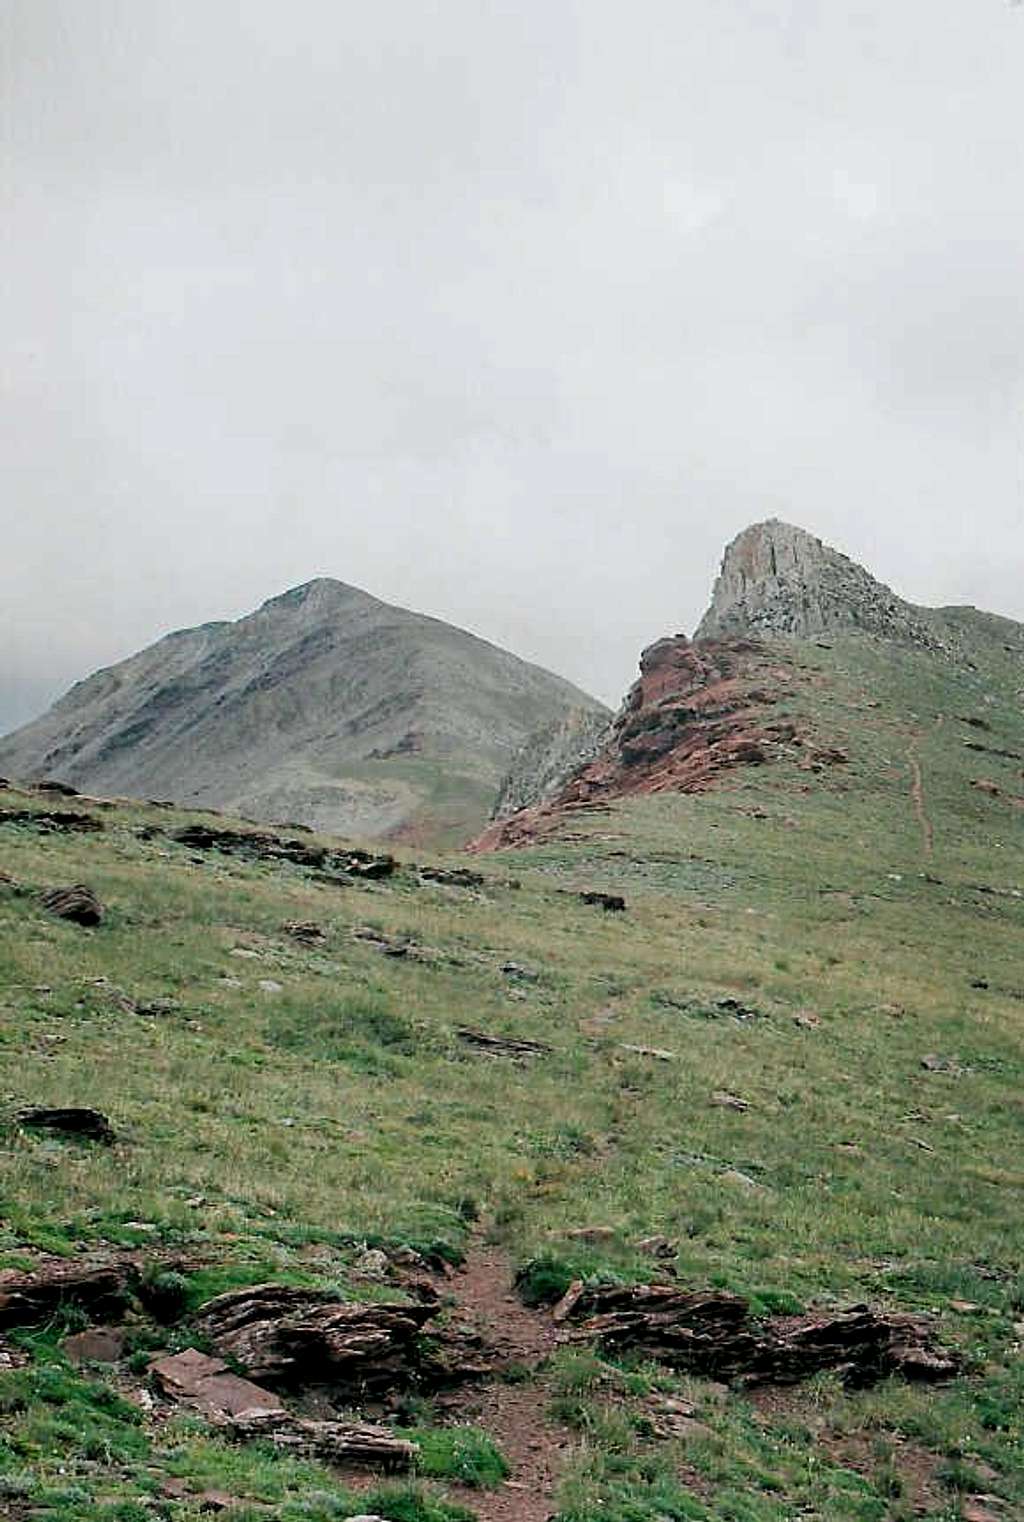 Jacque Peak